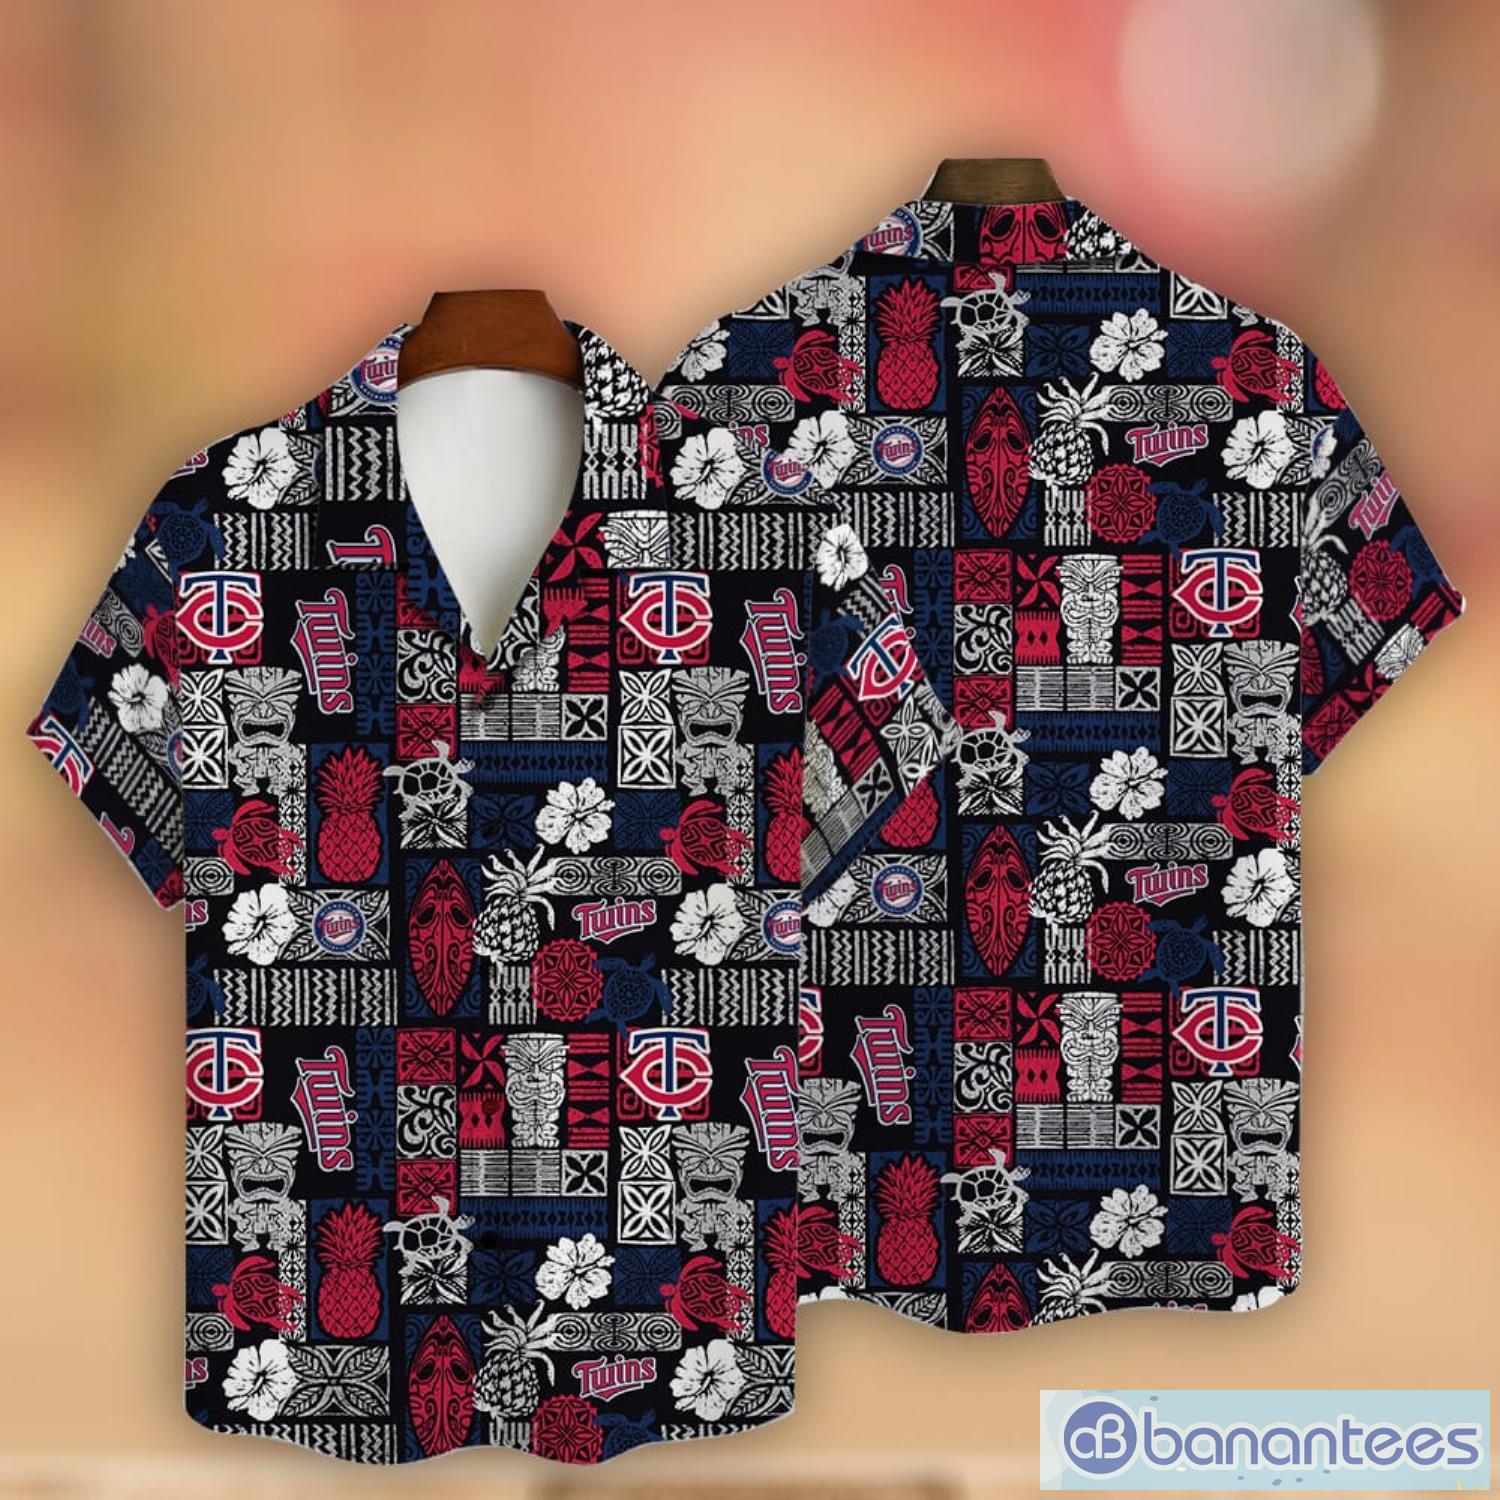 Minnesota Twins Baseball Fans Major League 3D Print Hawaiian Shirt For Men  And Women